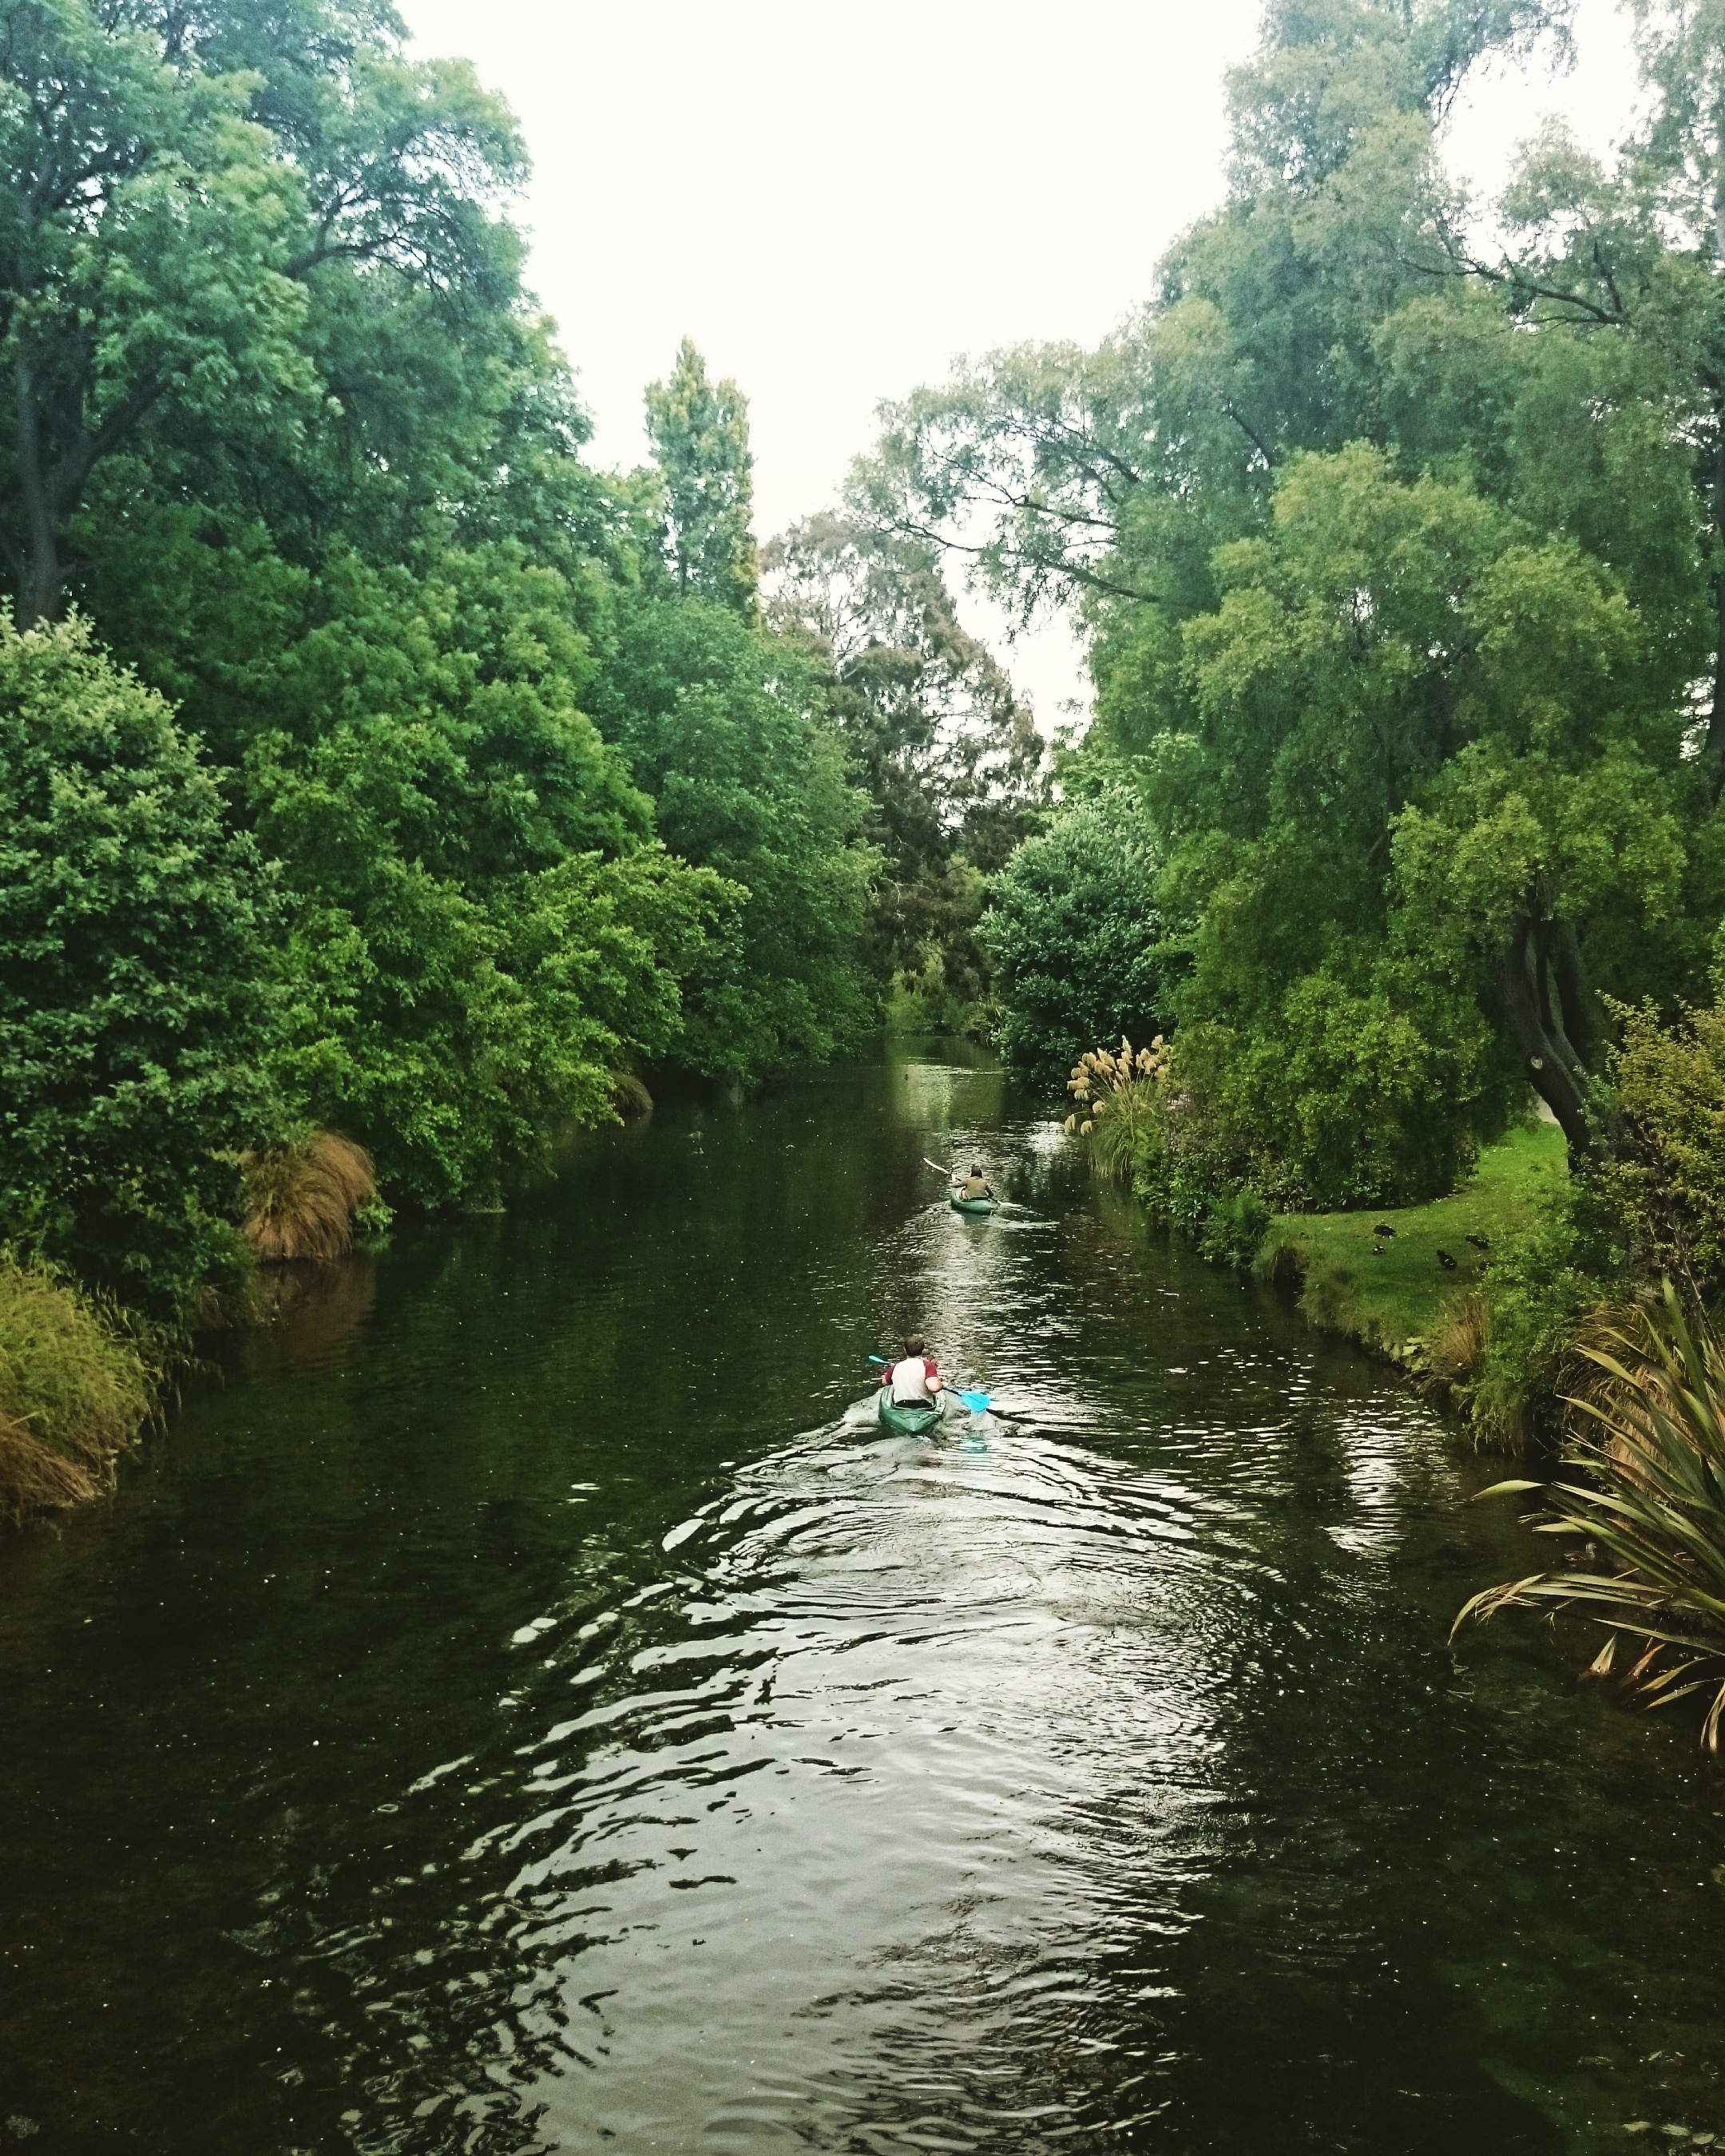  Kayaking down the Avon River 